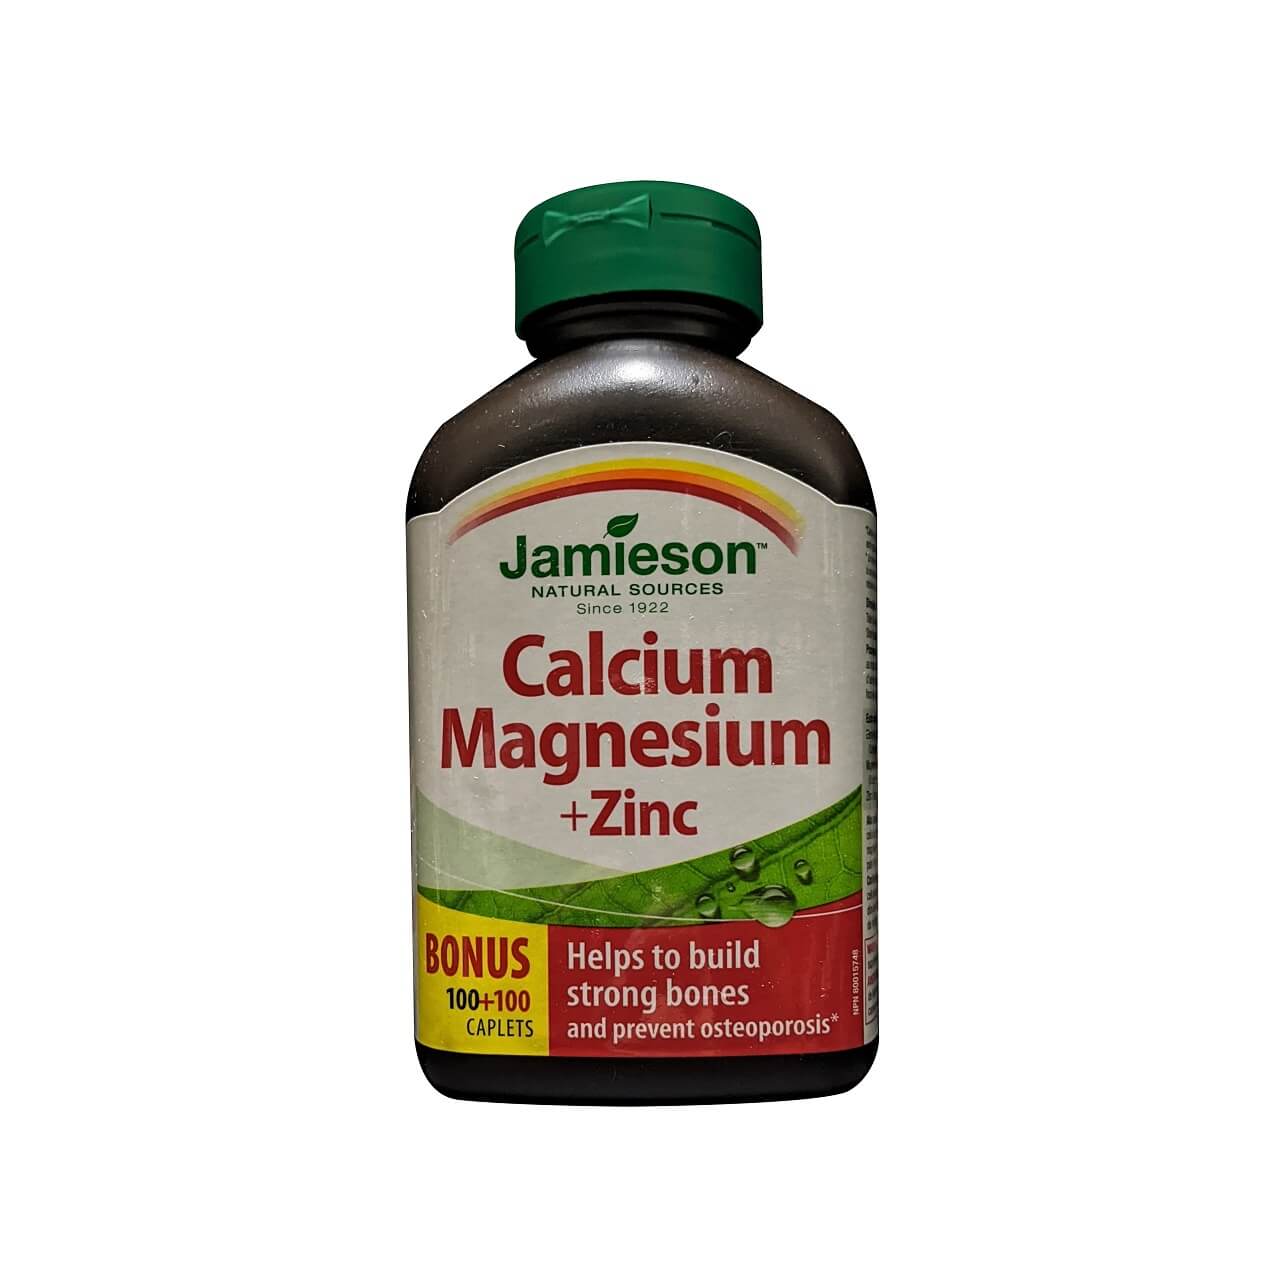 Product label for Jamieson Calcium Magnesium and Zinc (200 caplets) (100 caplet bonus) in English